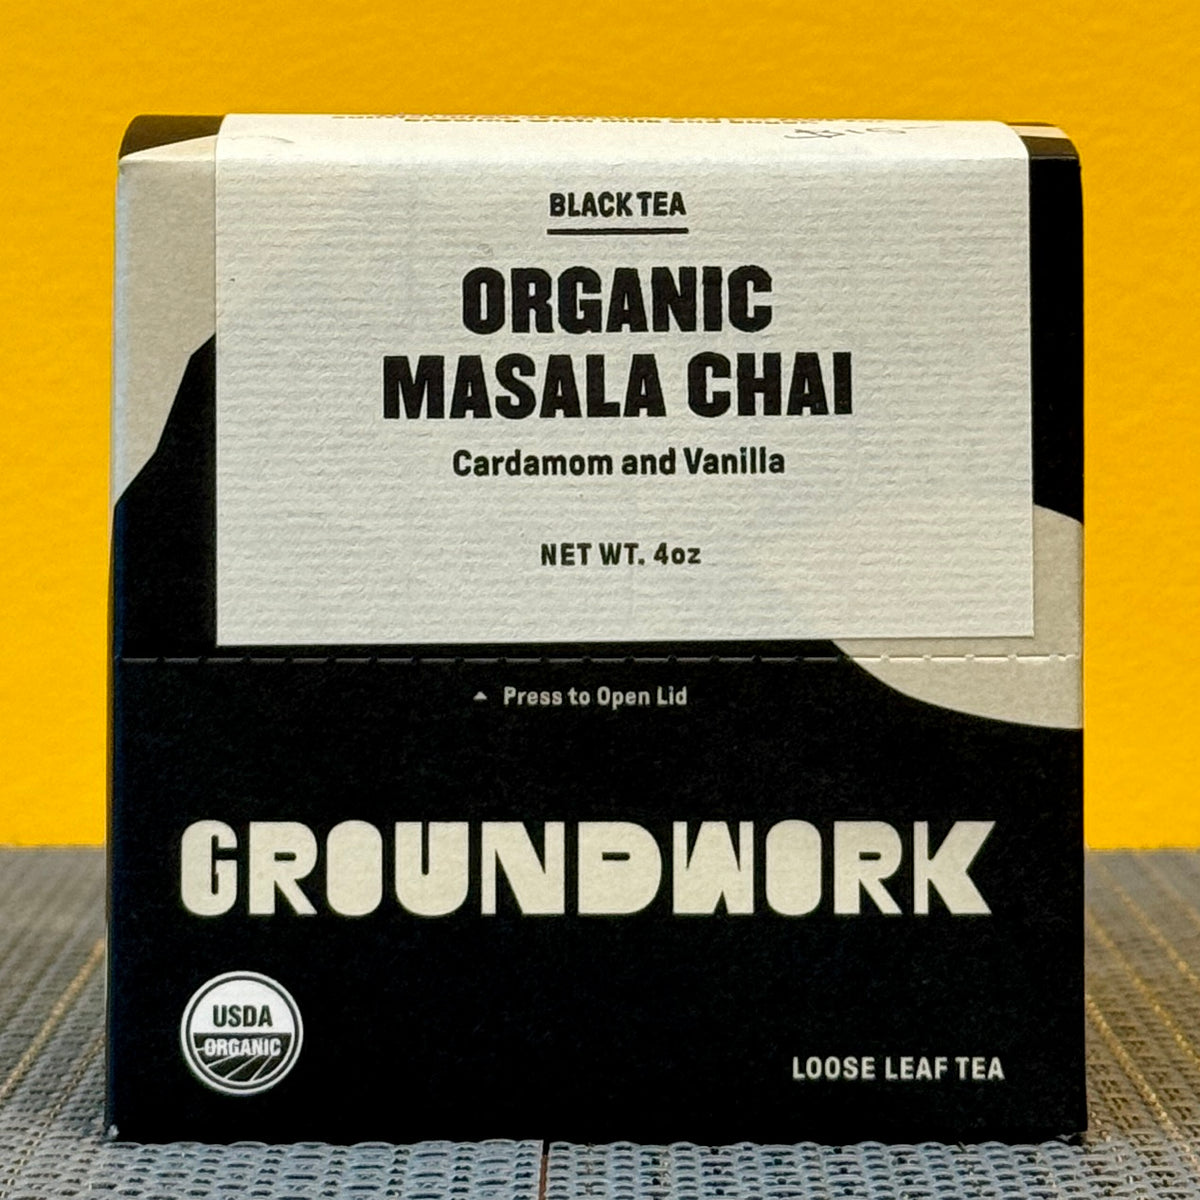 Groundwork Loose Leaf Tea - Masala Chai Black Tea